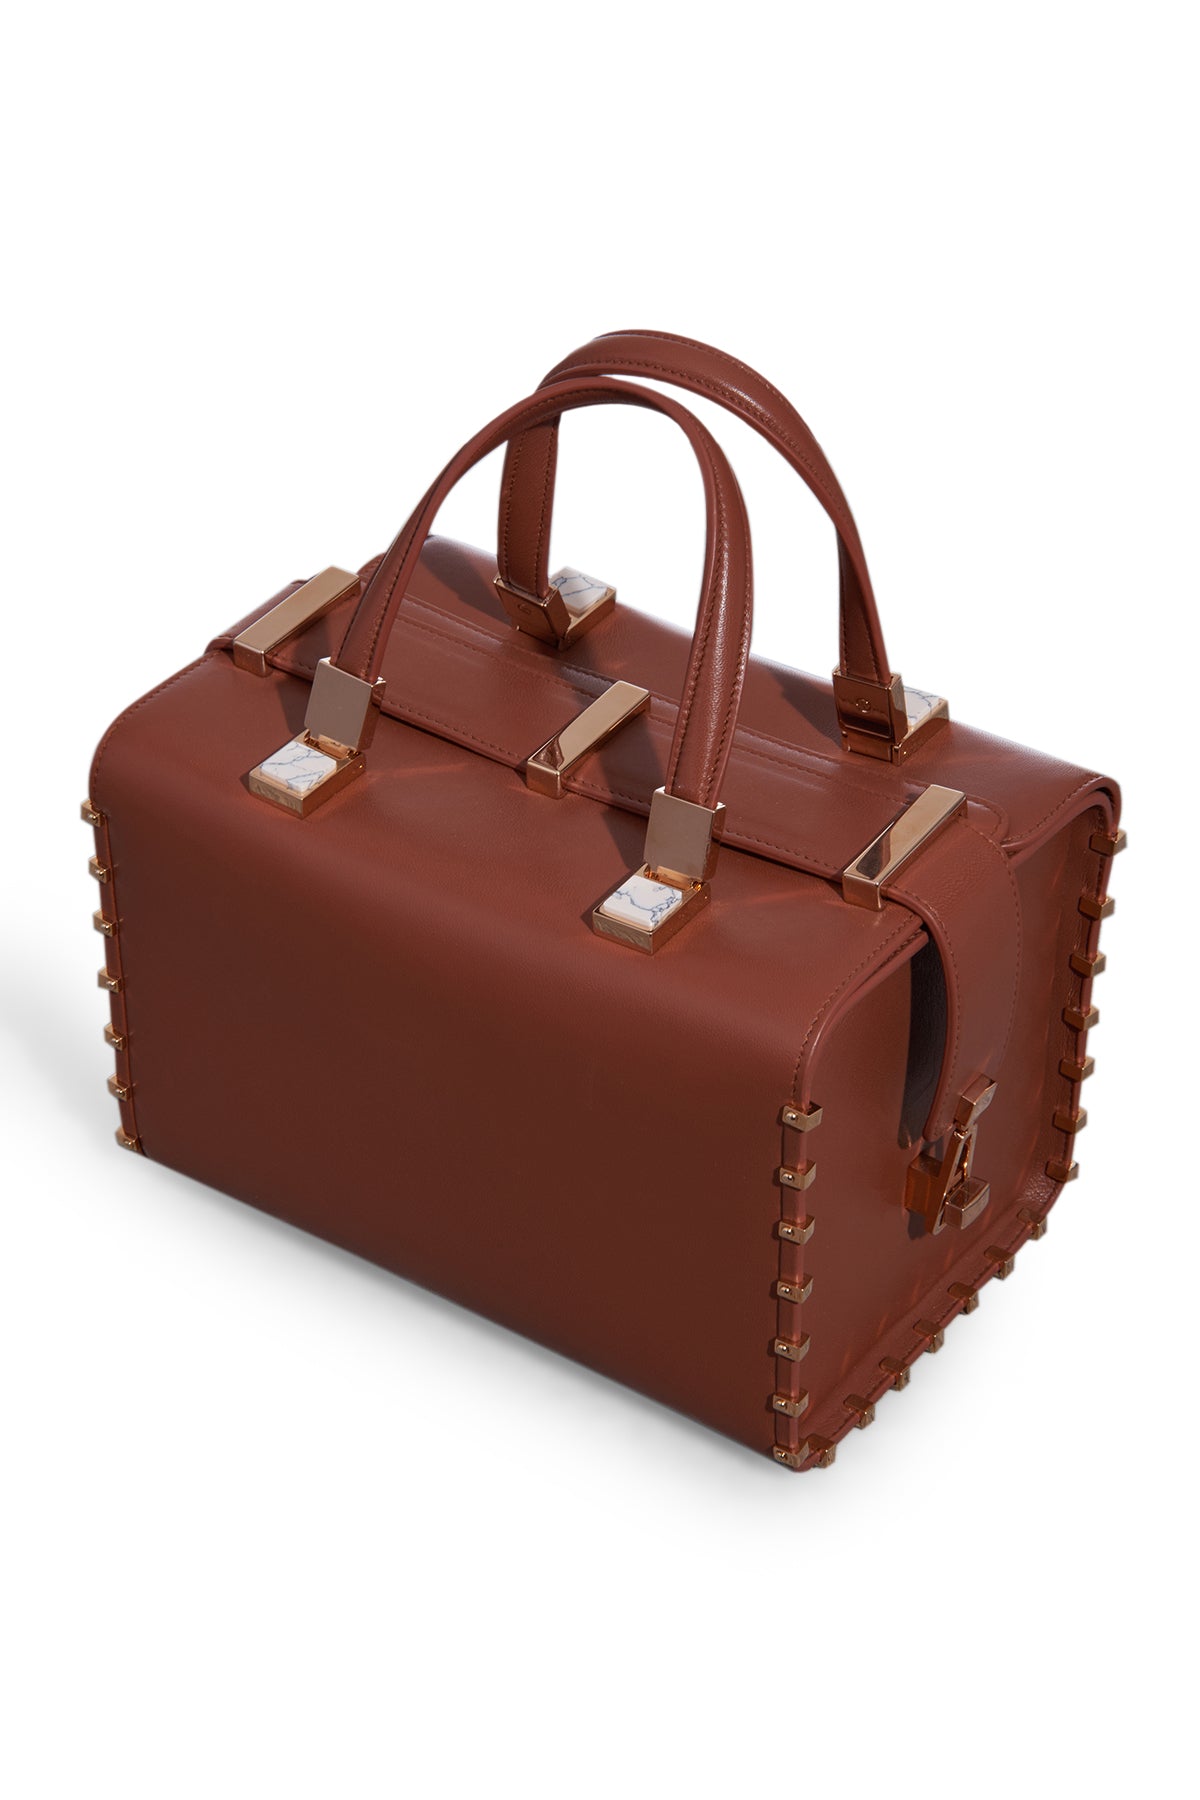 Wabi Bag in Cognac Nappa Leather